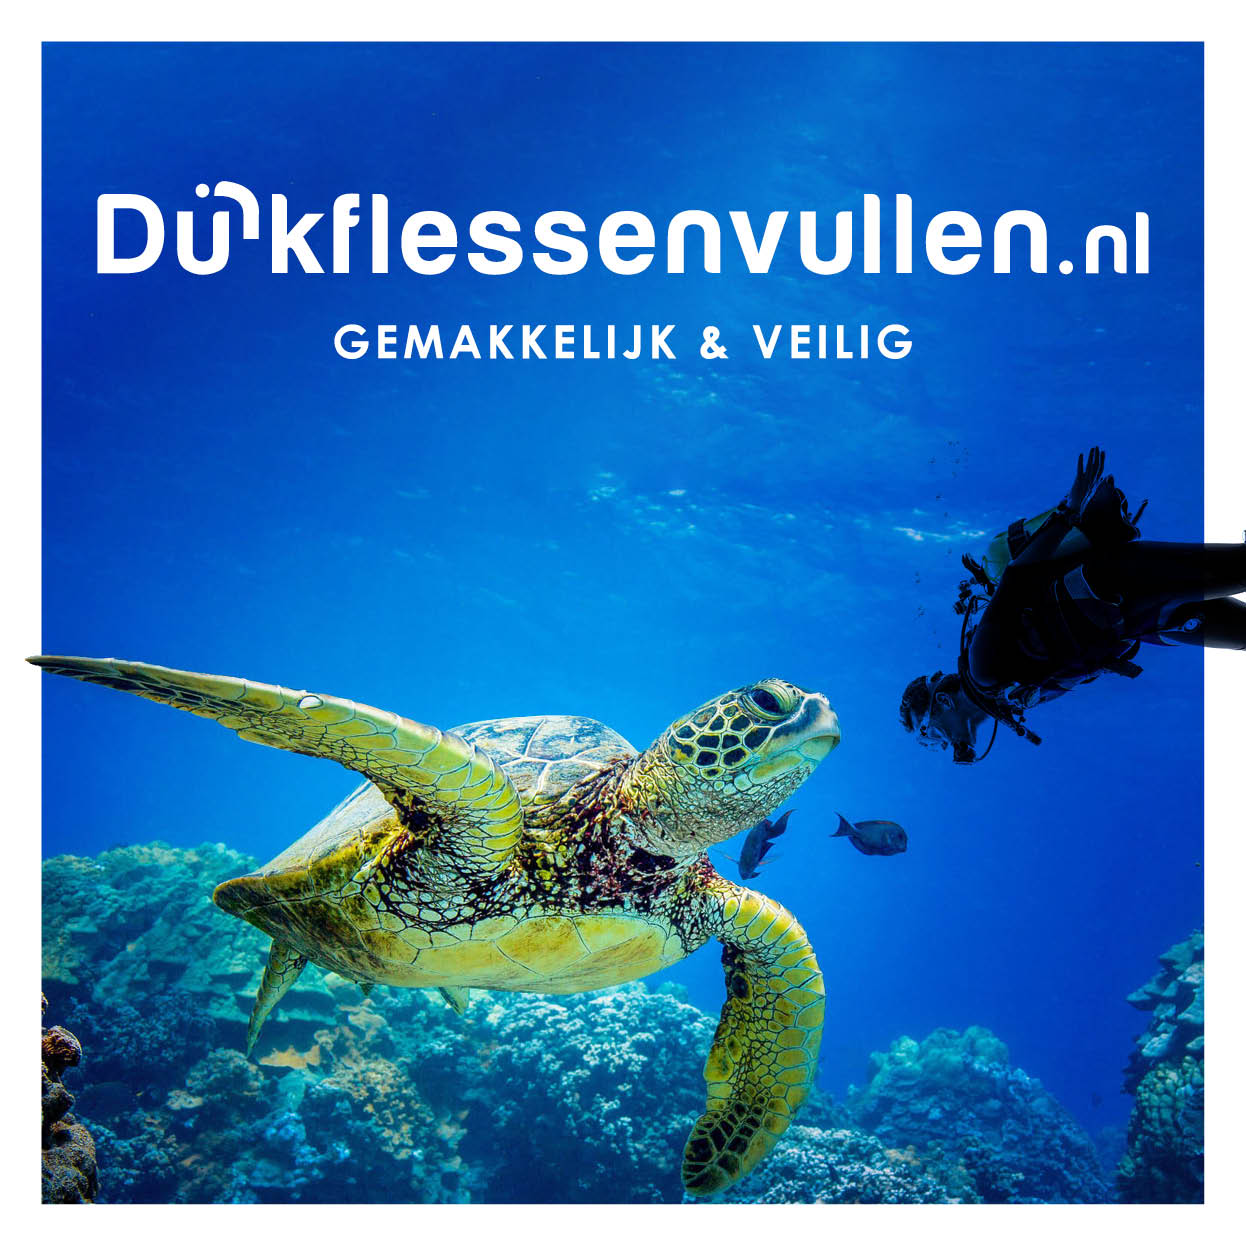 11088 Dive & Air / Duikflessenvullen.nl